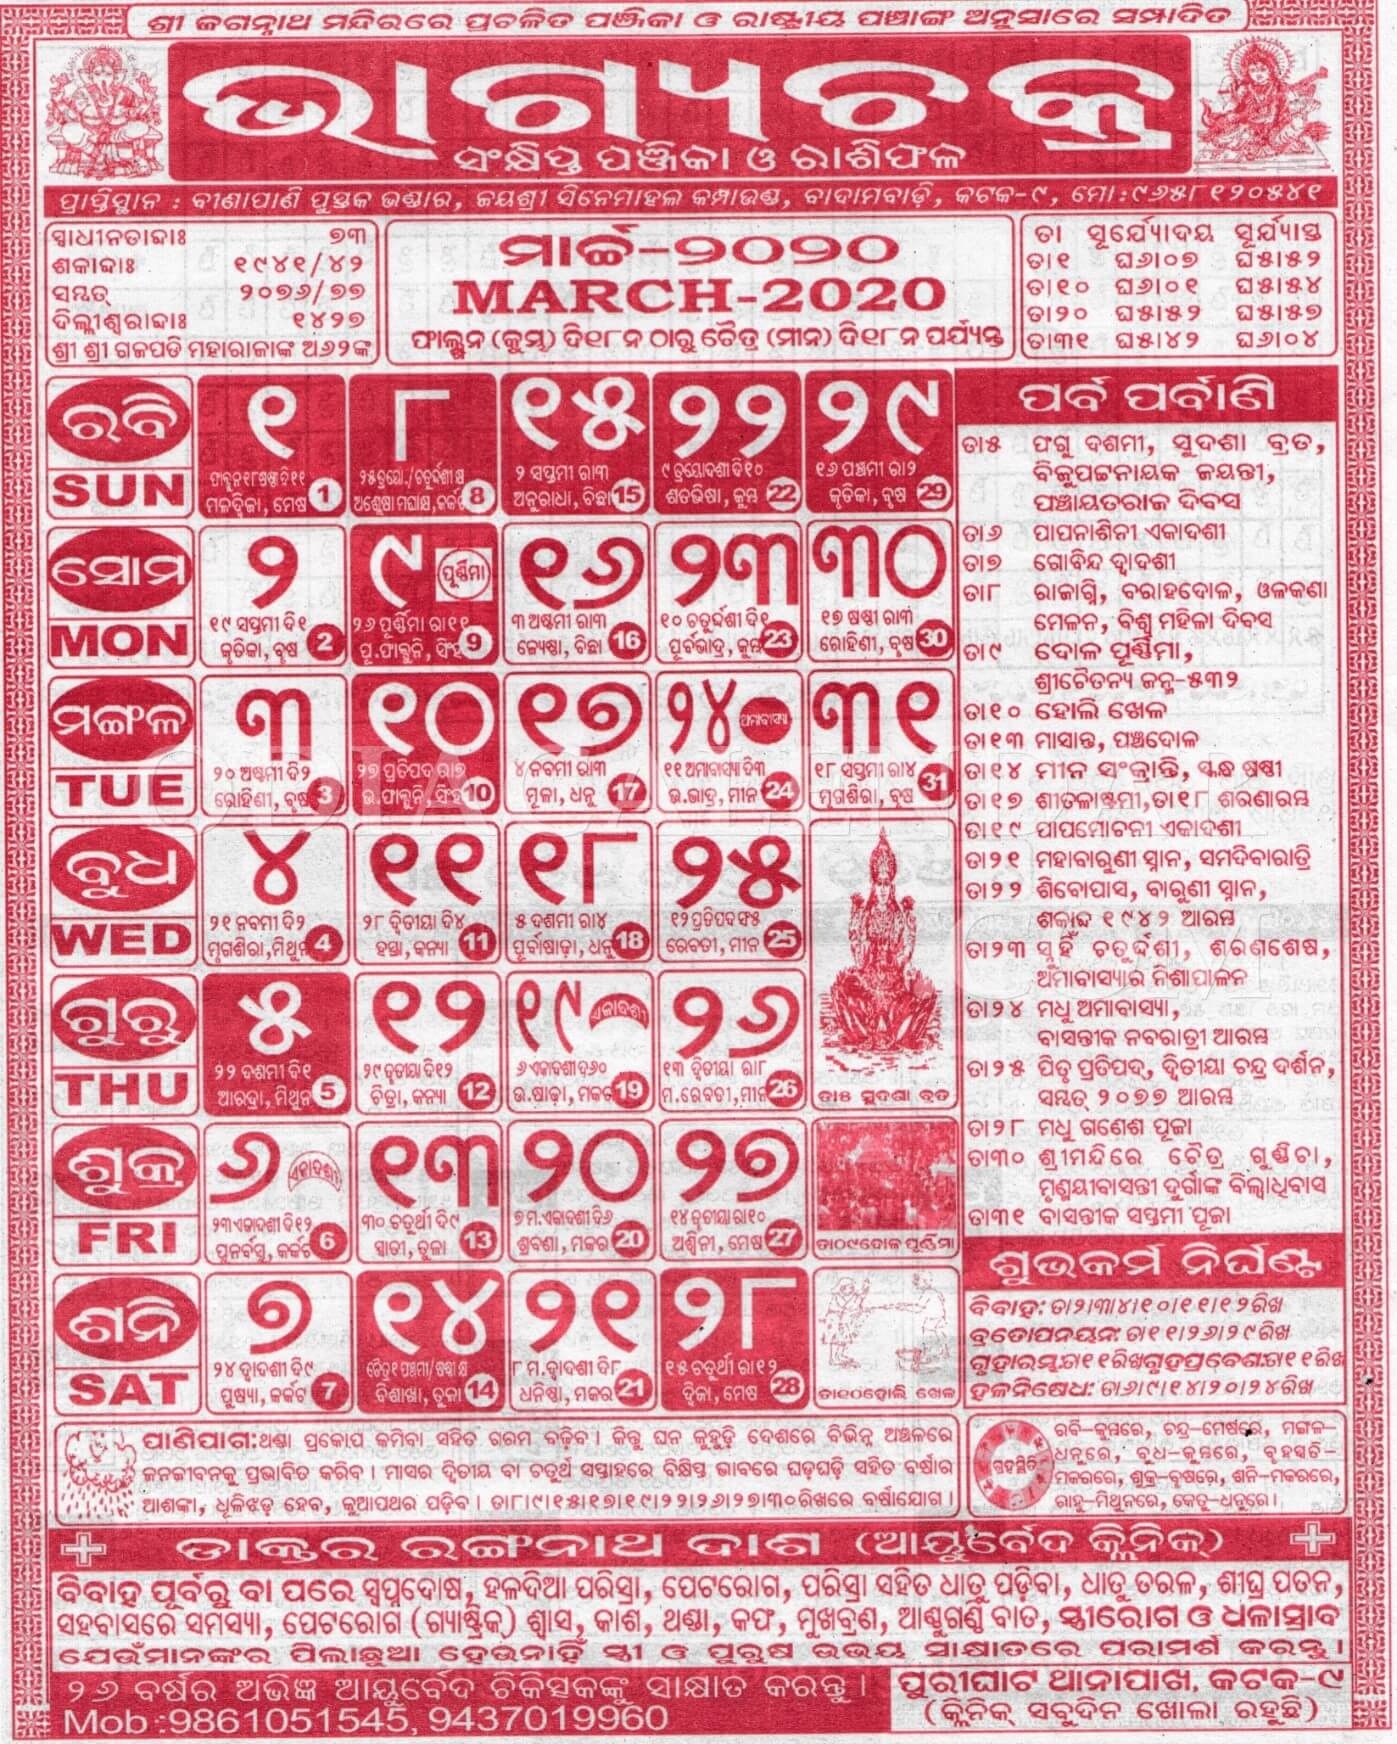 Bhagyachakra Odia Calendar March 2020 - Download Hd Quality July 2021 Calendar Odia